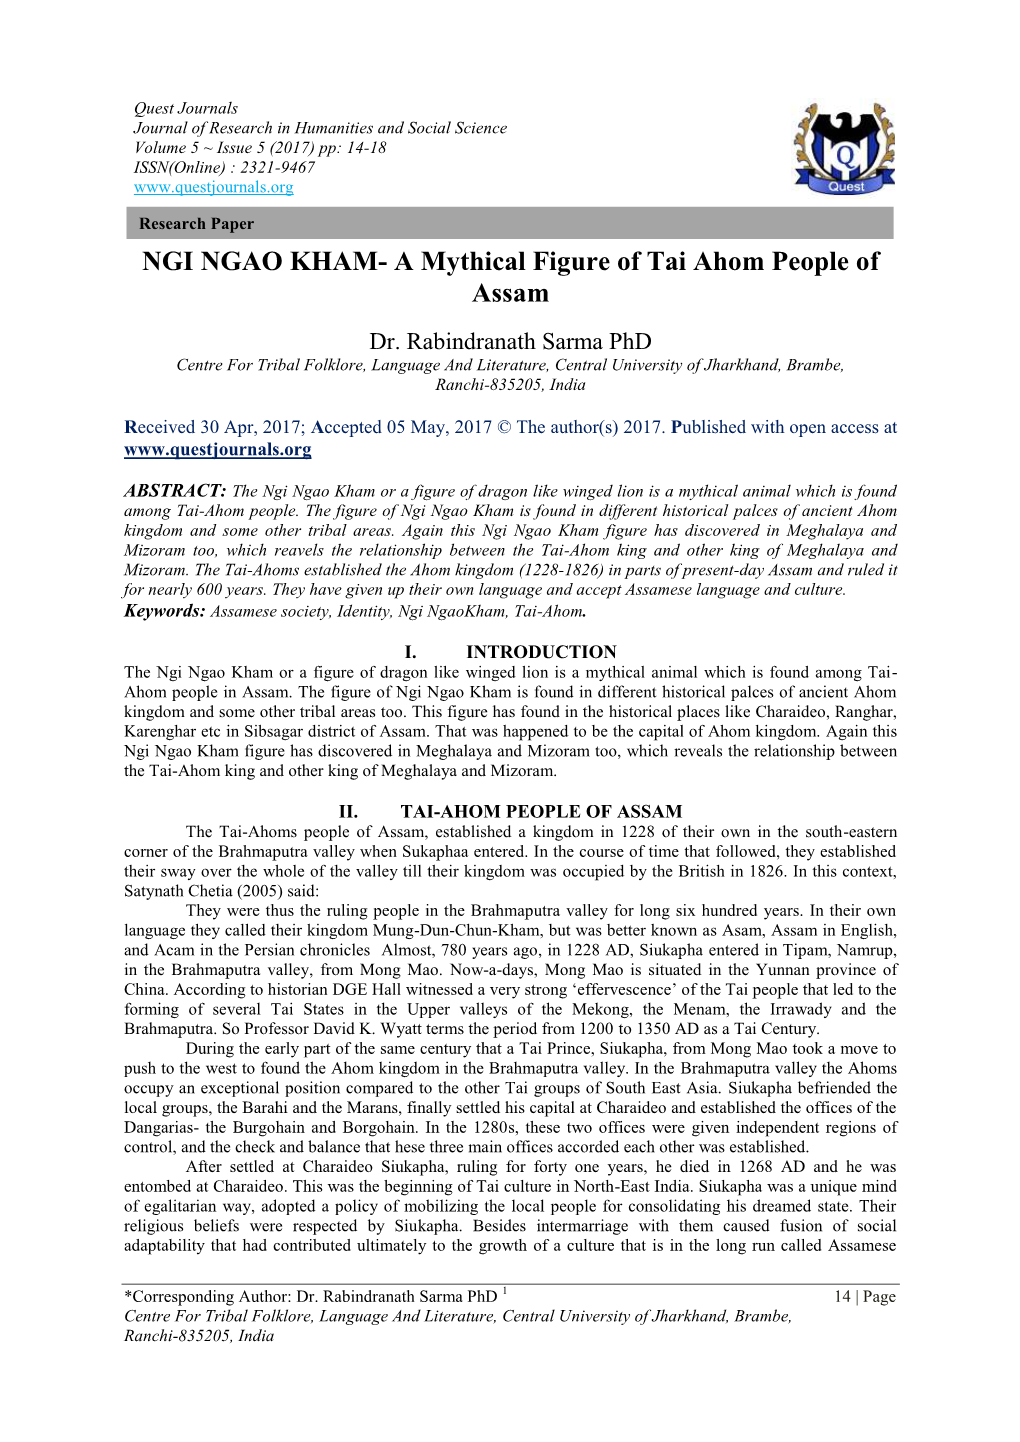 NGI NGAO KHAM- a Mythical Figure of Tai Ahom People of Assam